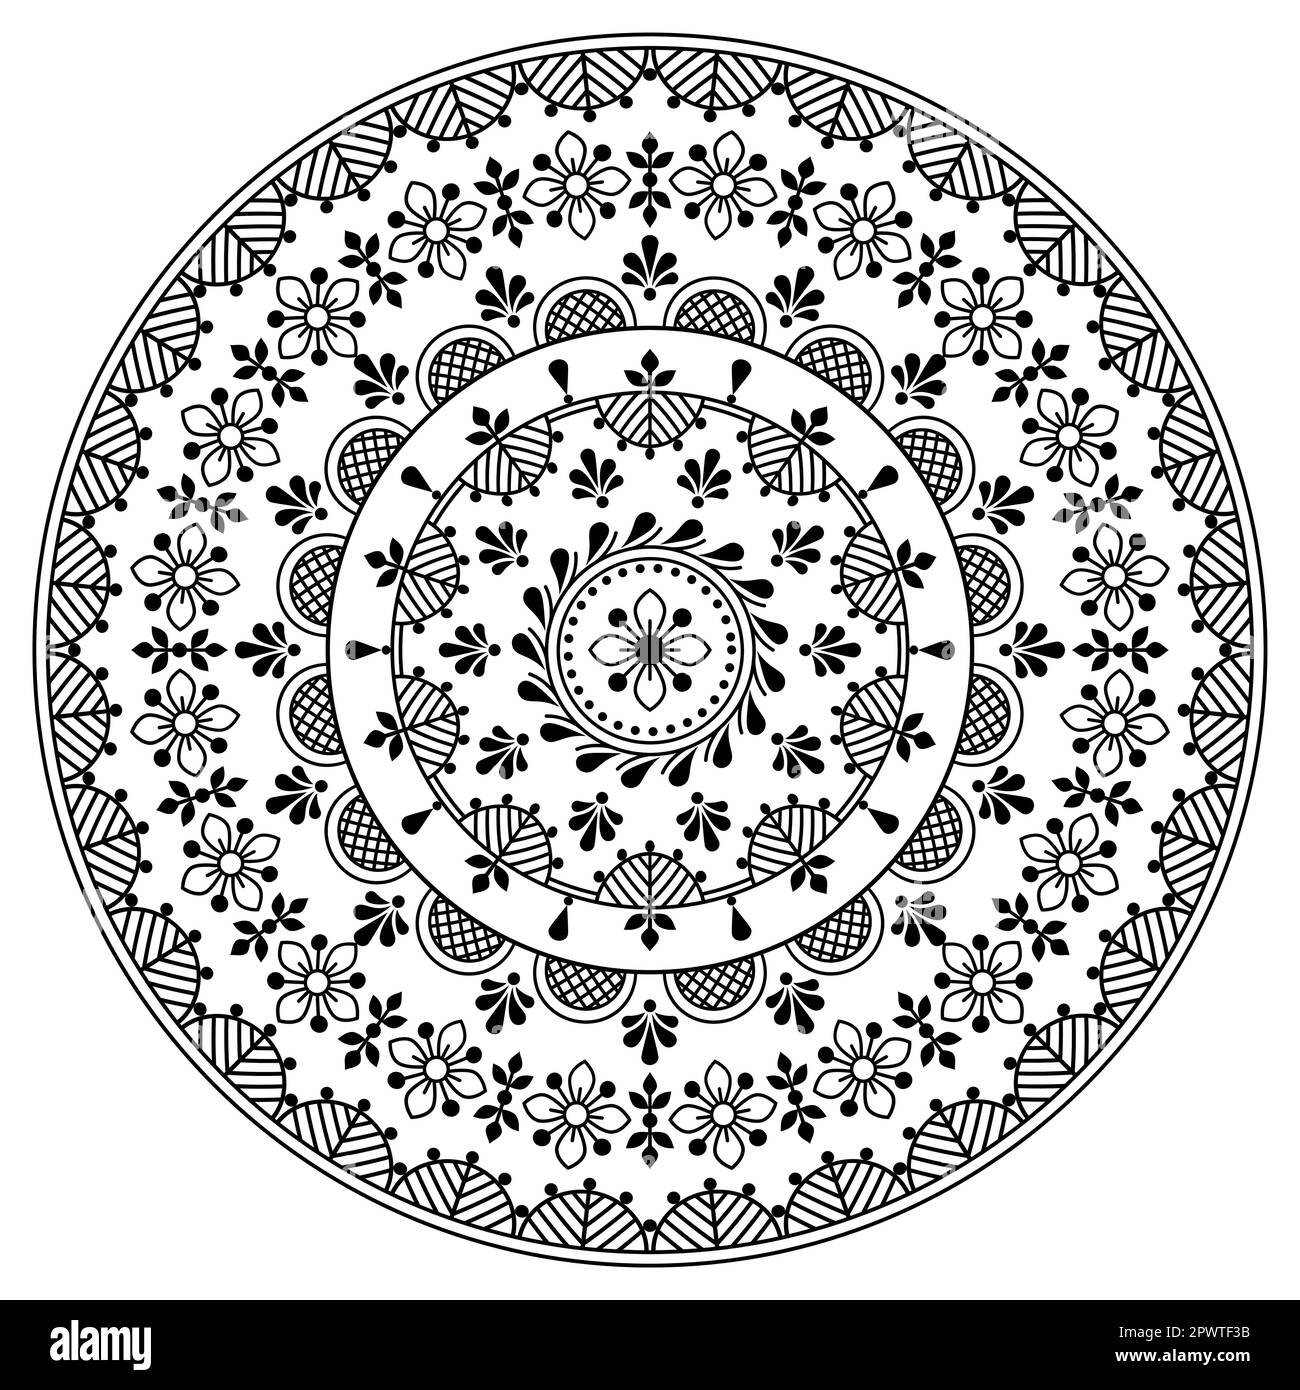 Scandinave floral noir et blanc mandala vector broderie folk art style - parfait pour une carte de vœux ou une invitation de mariage Illustration de Vecteur